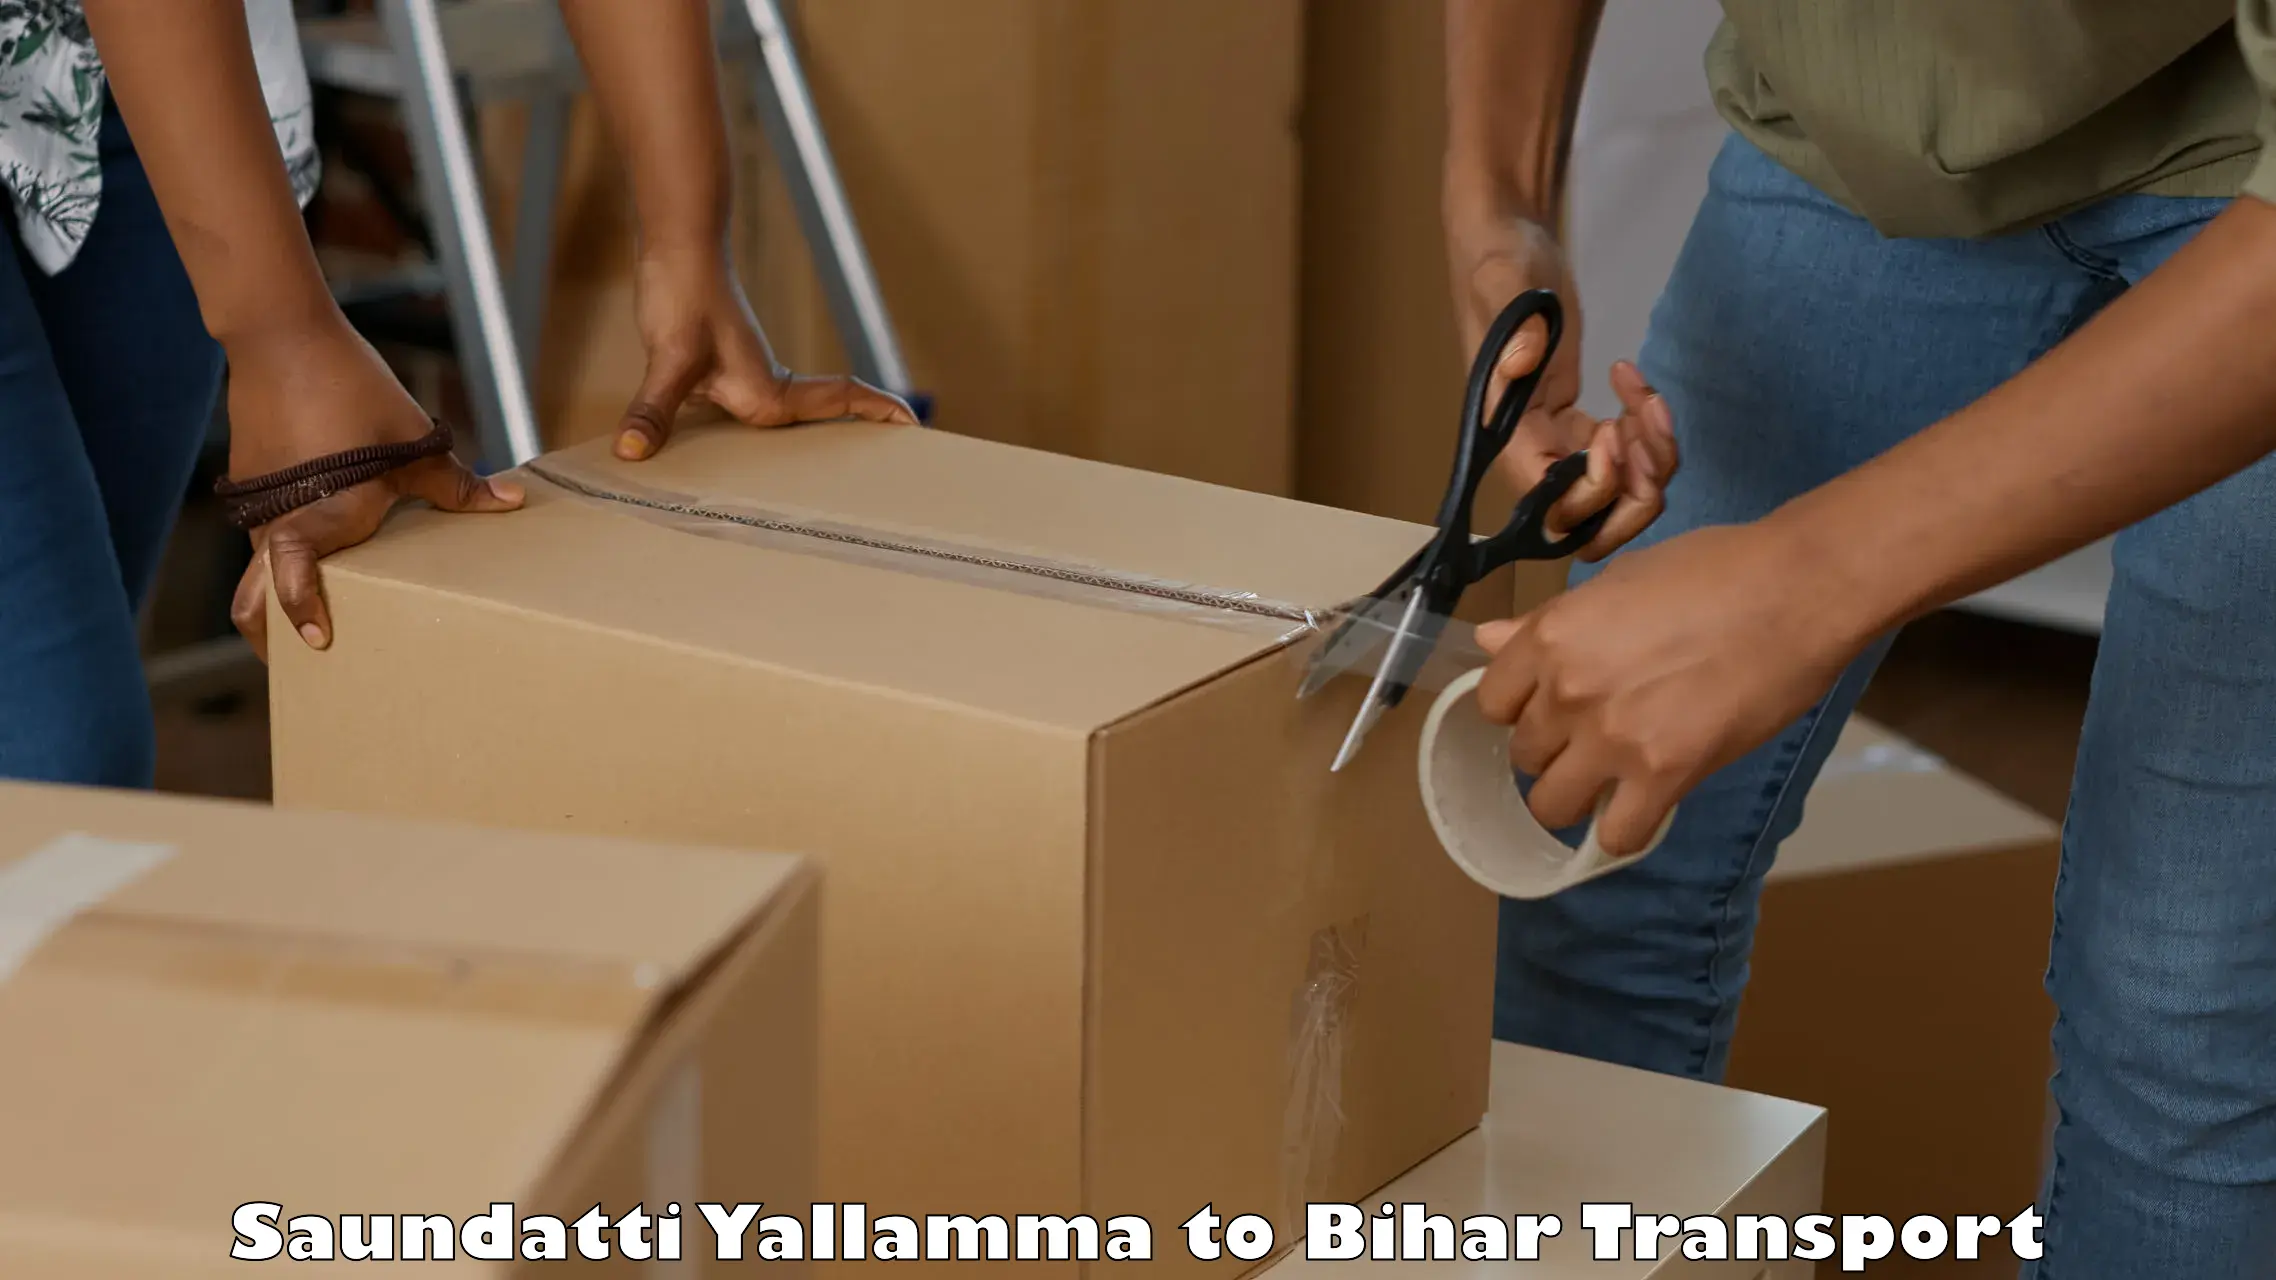 Vehicle transport services in Saundatti Yallamma to Bettiah